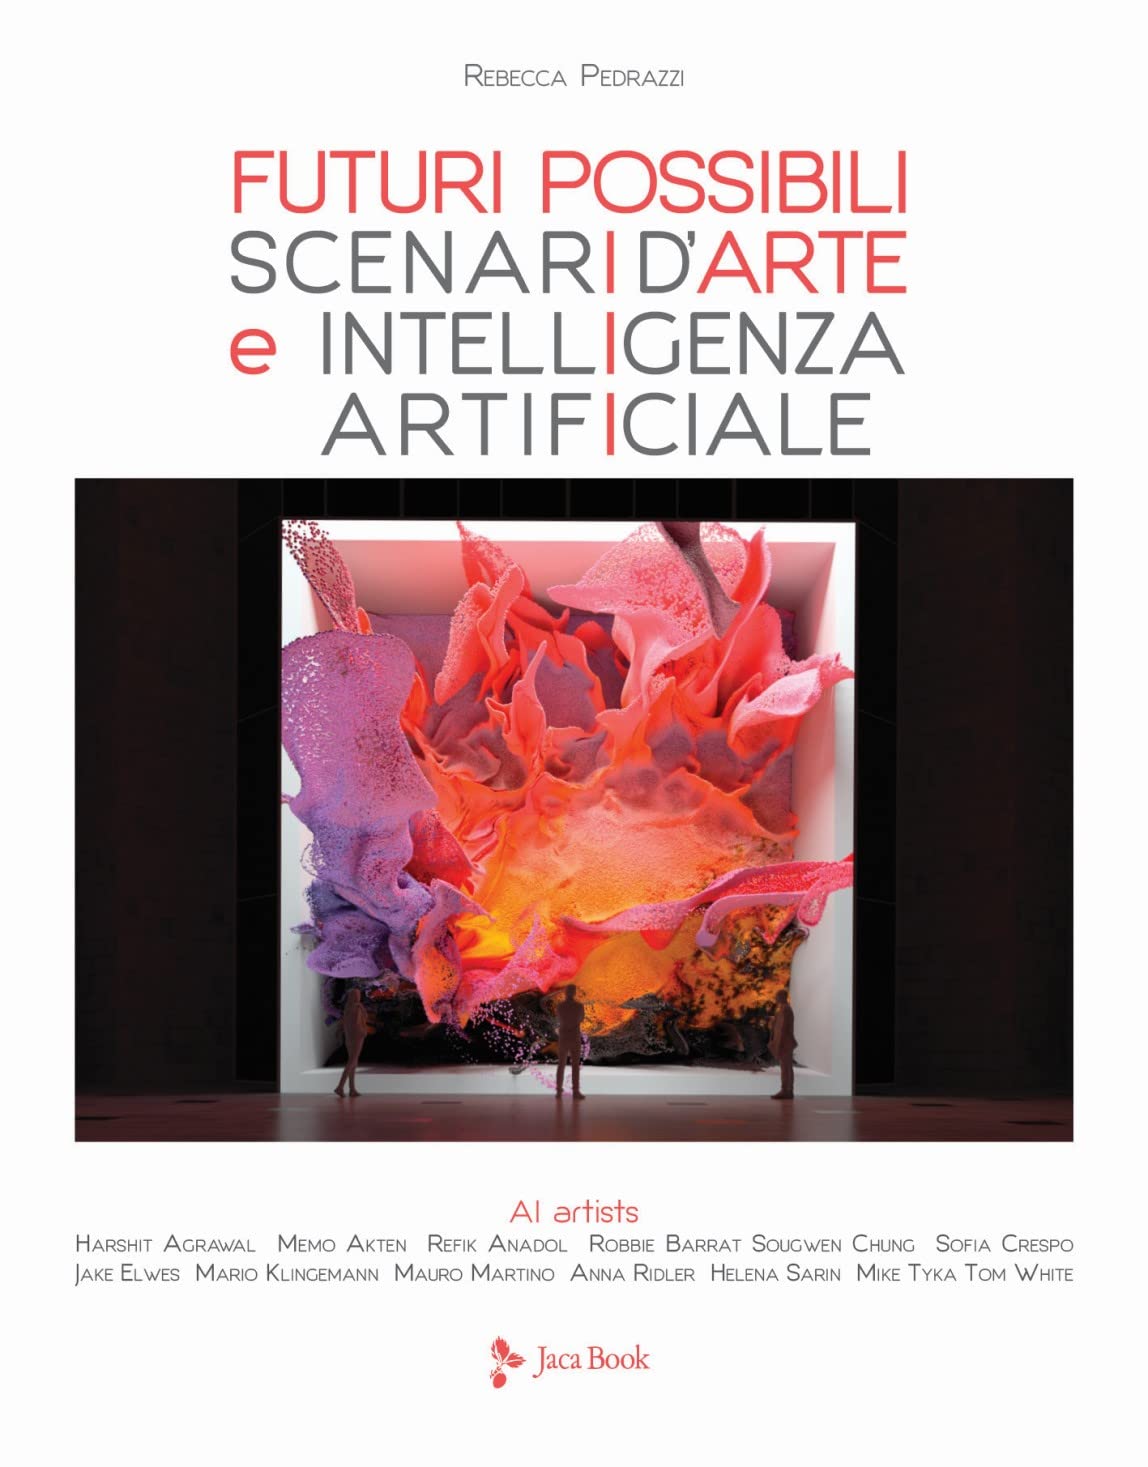 Rebecca Pedrazzi – Futuri possibili. Scenari d'arte e Intelligenza Artificiale (Jaca Book, Milano 2021)